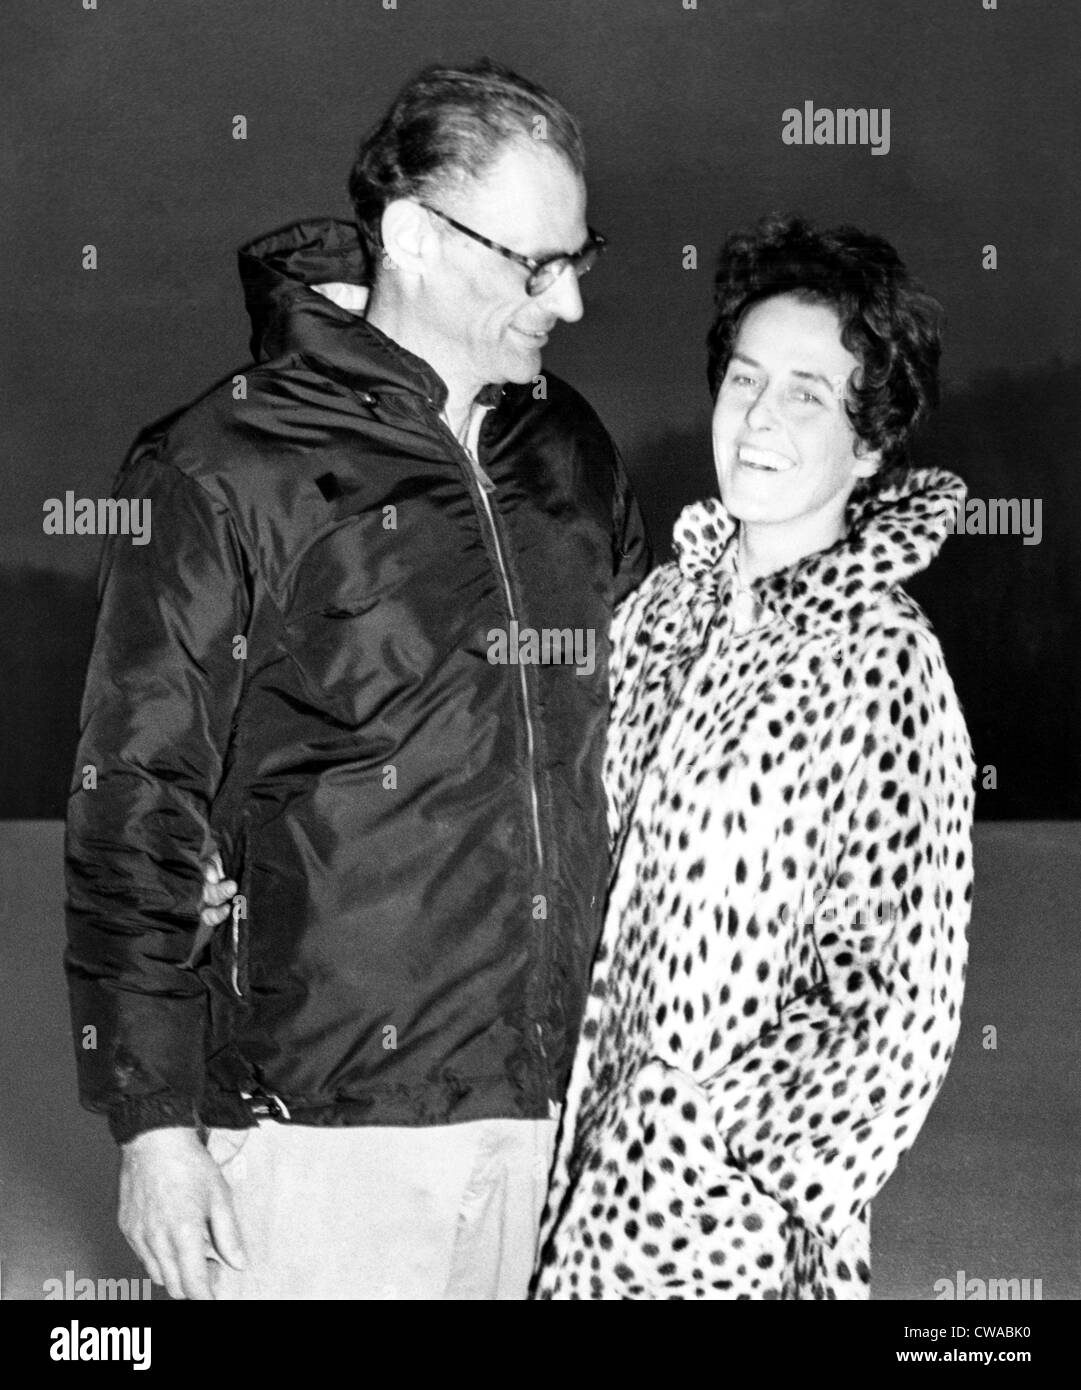 Arthur Miller et sa nouvelle femme photographe Inge Morath, 1960. Avec la permission de la CSU : Archives / Everett Collection Banque D'Images